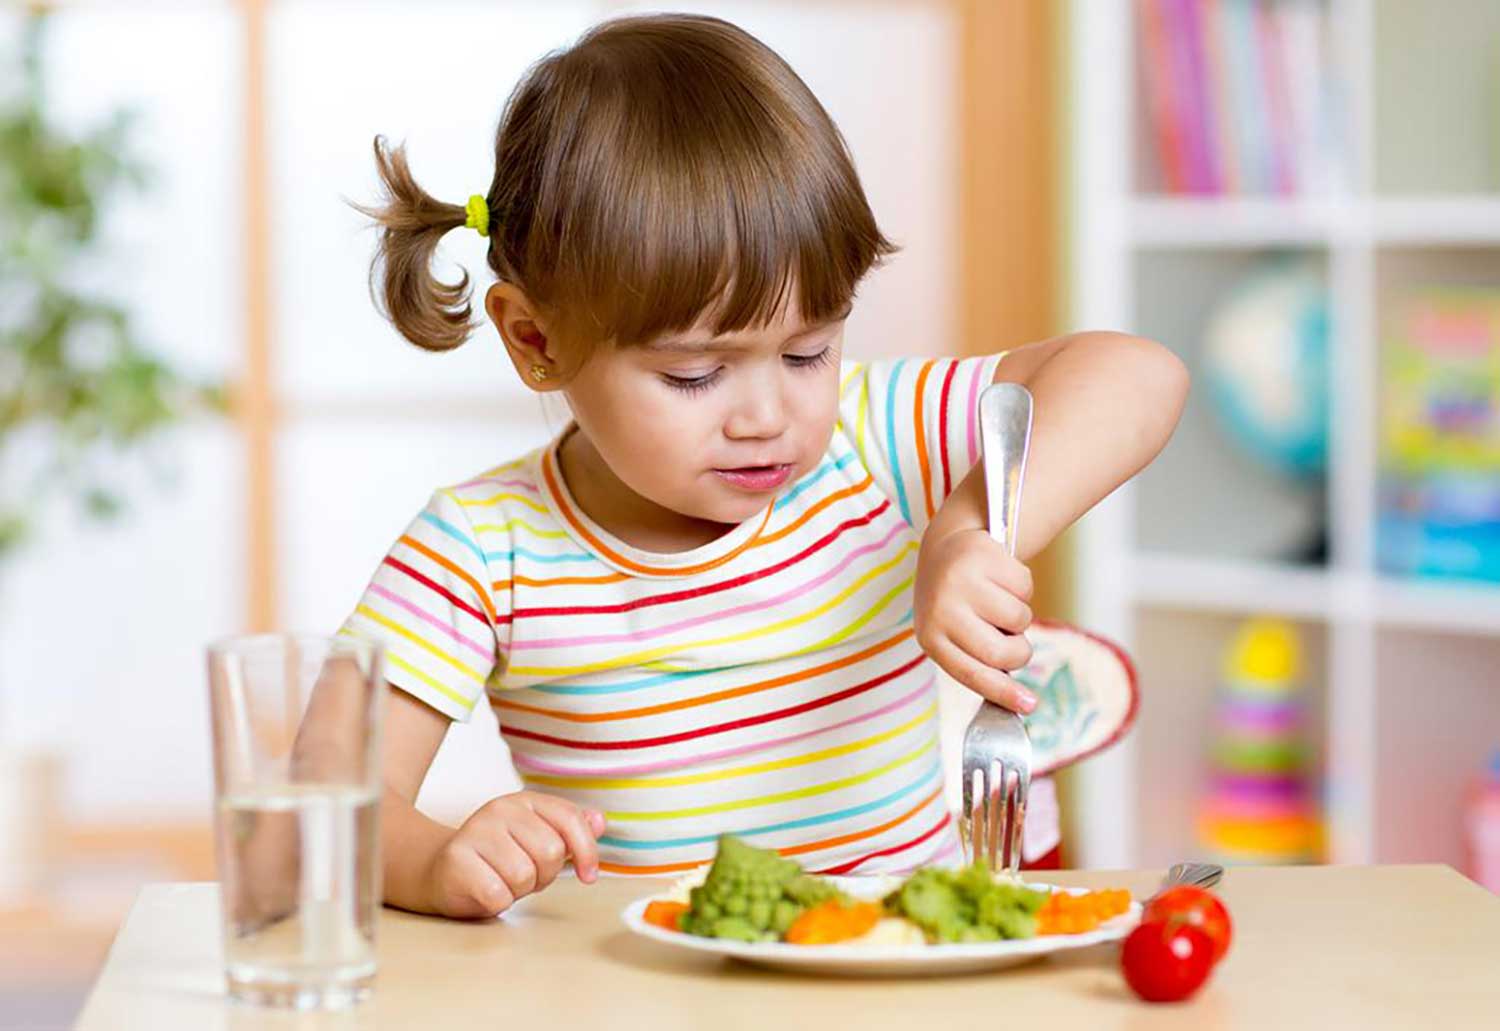 کاهش مصرف این ماده غذایی از دوران کودکی؛ راهی به سوی سلامت فردا